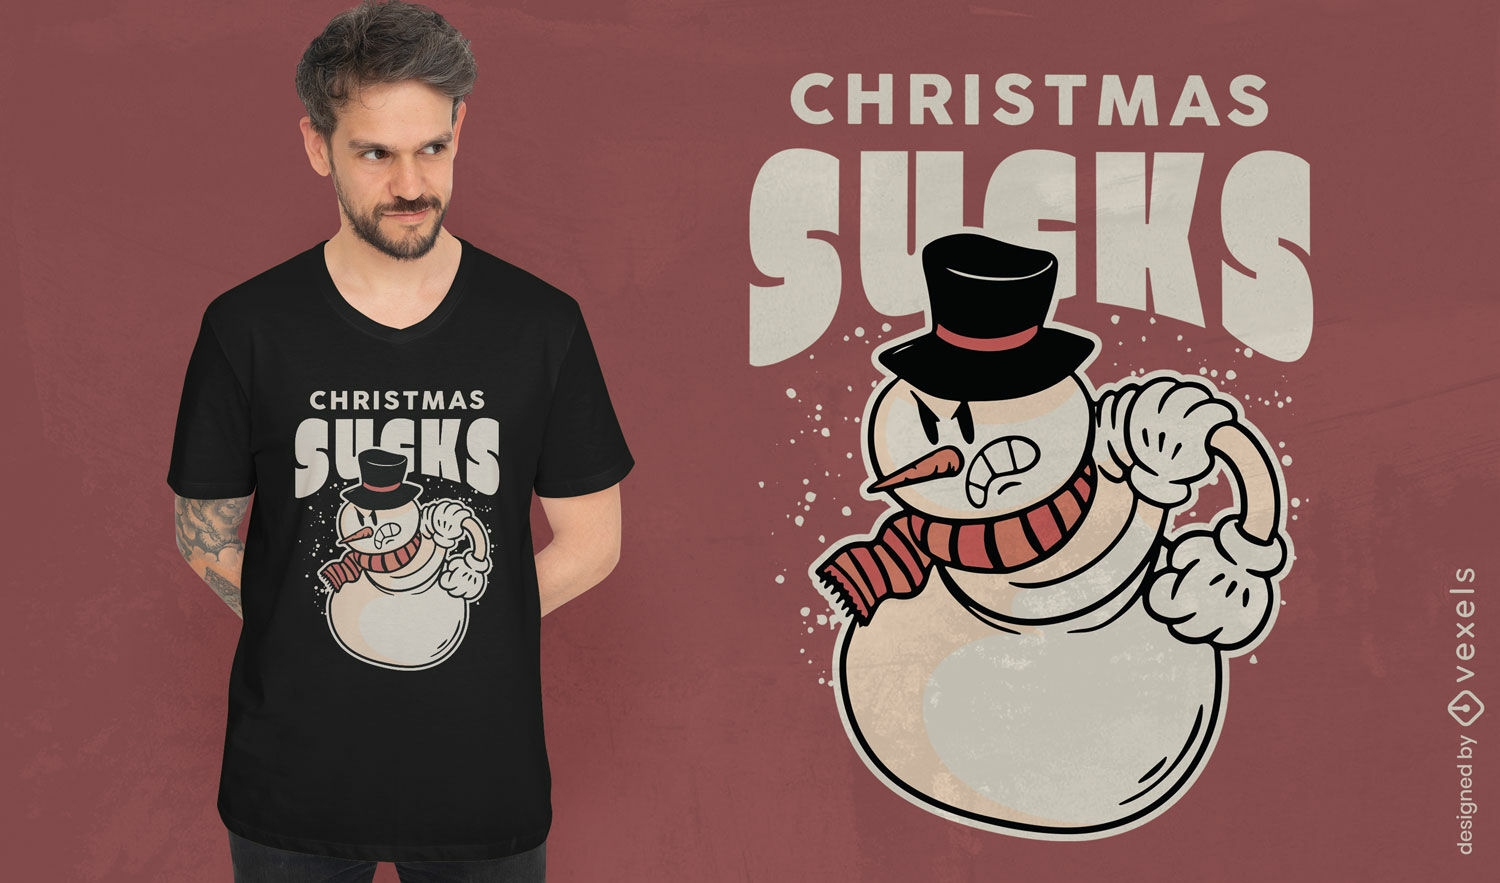 Muñeco de nieve loco Diseño de camiseta anti navidad